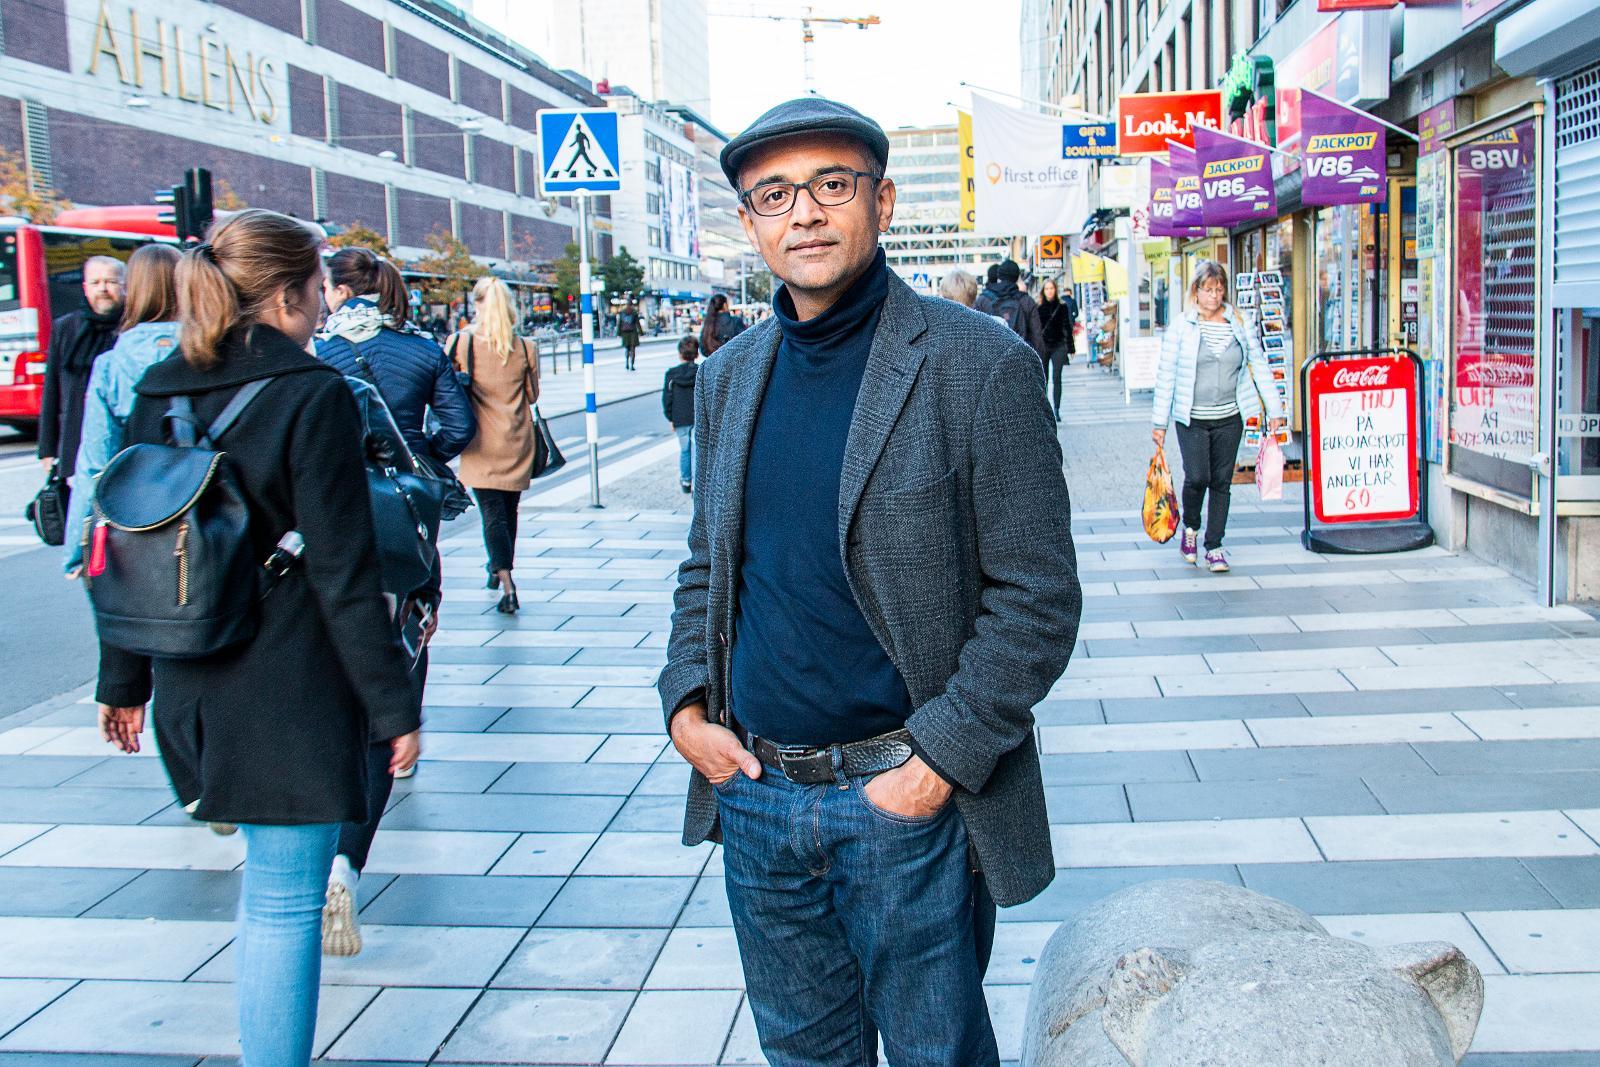 Tidigare hinduprästen Rahil Patel mitt i Stockholmsvimlet. Han har gjort över 400 resor i Europa för att sprida hinduismen. Nu är han glad att få komma tillbaka och i stället berätta om sin kristna tro.